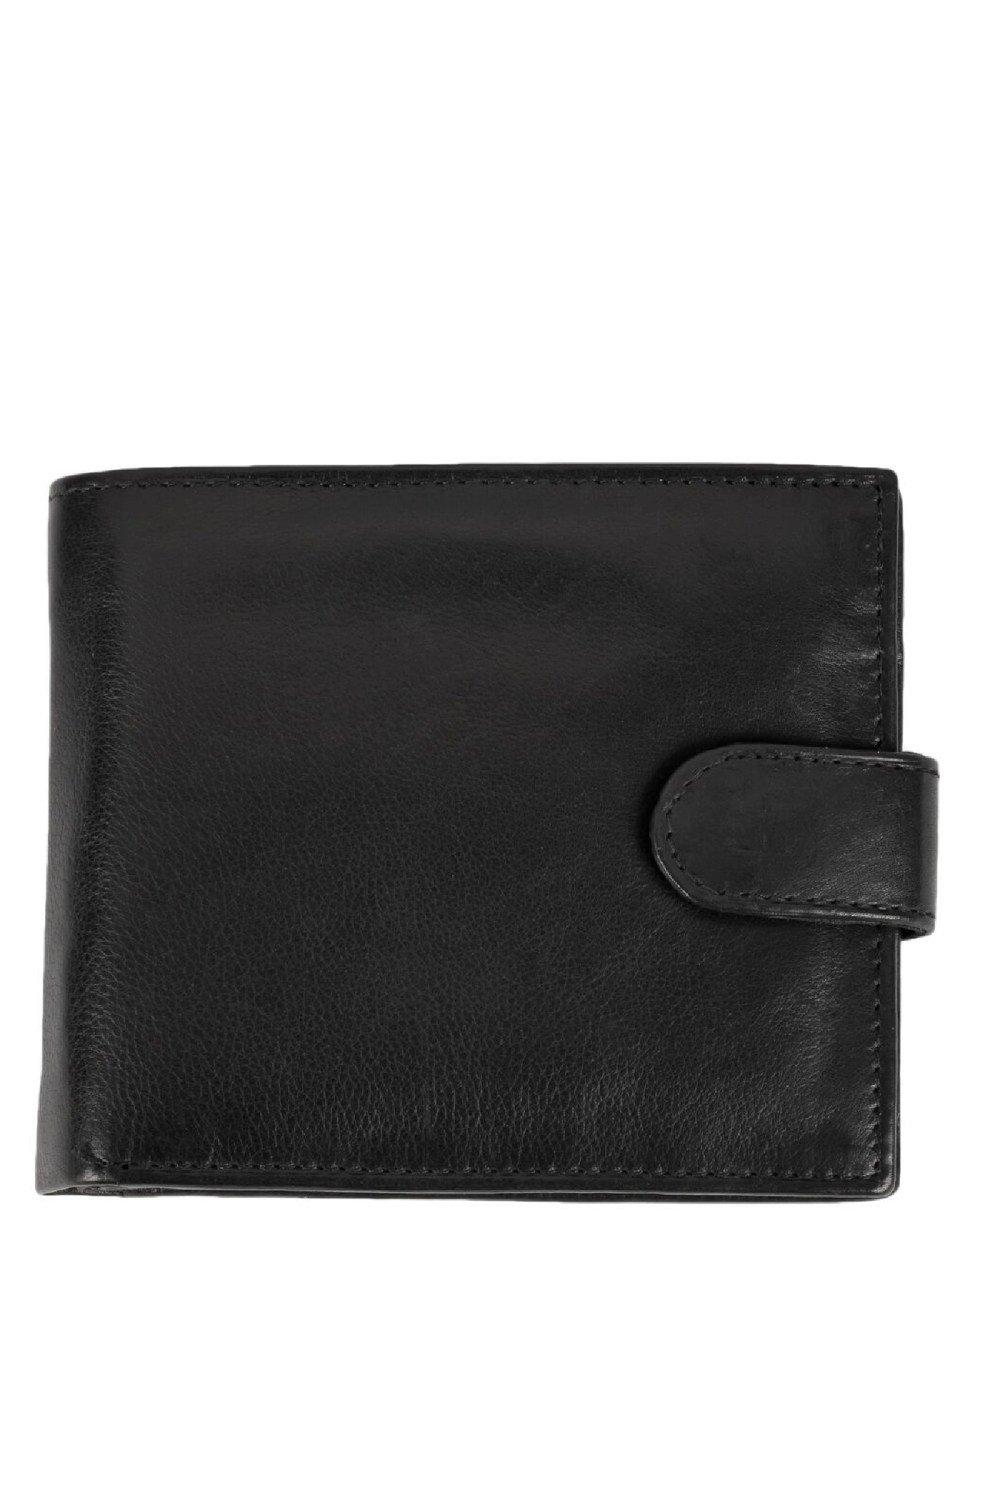 Двойной кожаный кошелек Royal Ram Harry Eastern Counties Leather, черный кожаный кошелек с d образным кольцом eastern counties leather красный